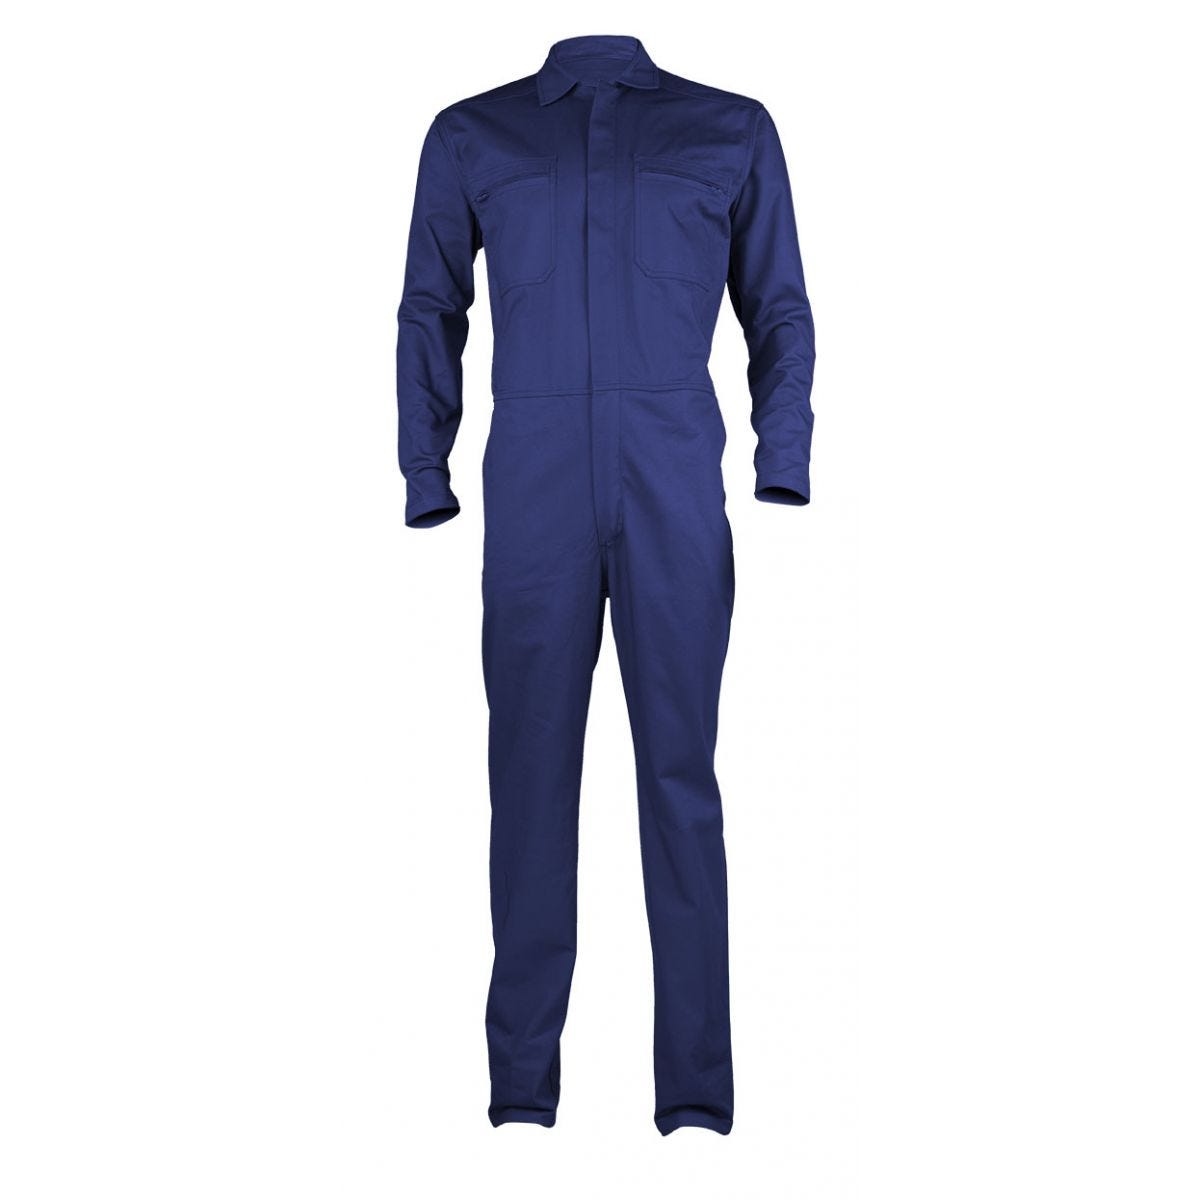 PARTNER Combinaison bleu royal, 100% coton, 280g/m² - COVERGUARD - Taille 2XL 0